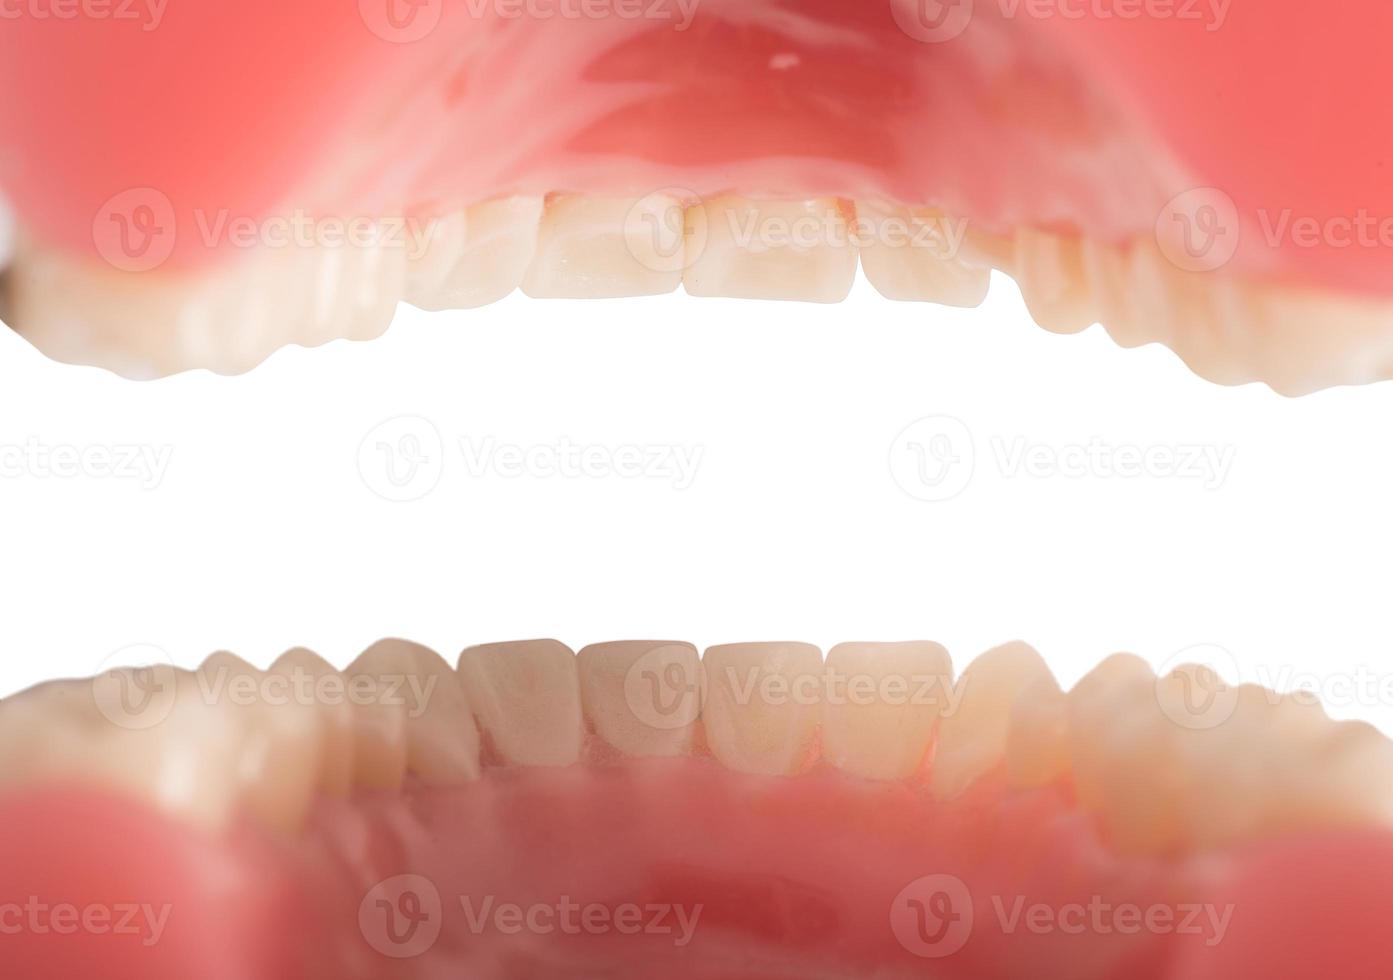 isolerat tänder och tandkött se foto